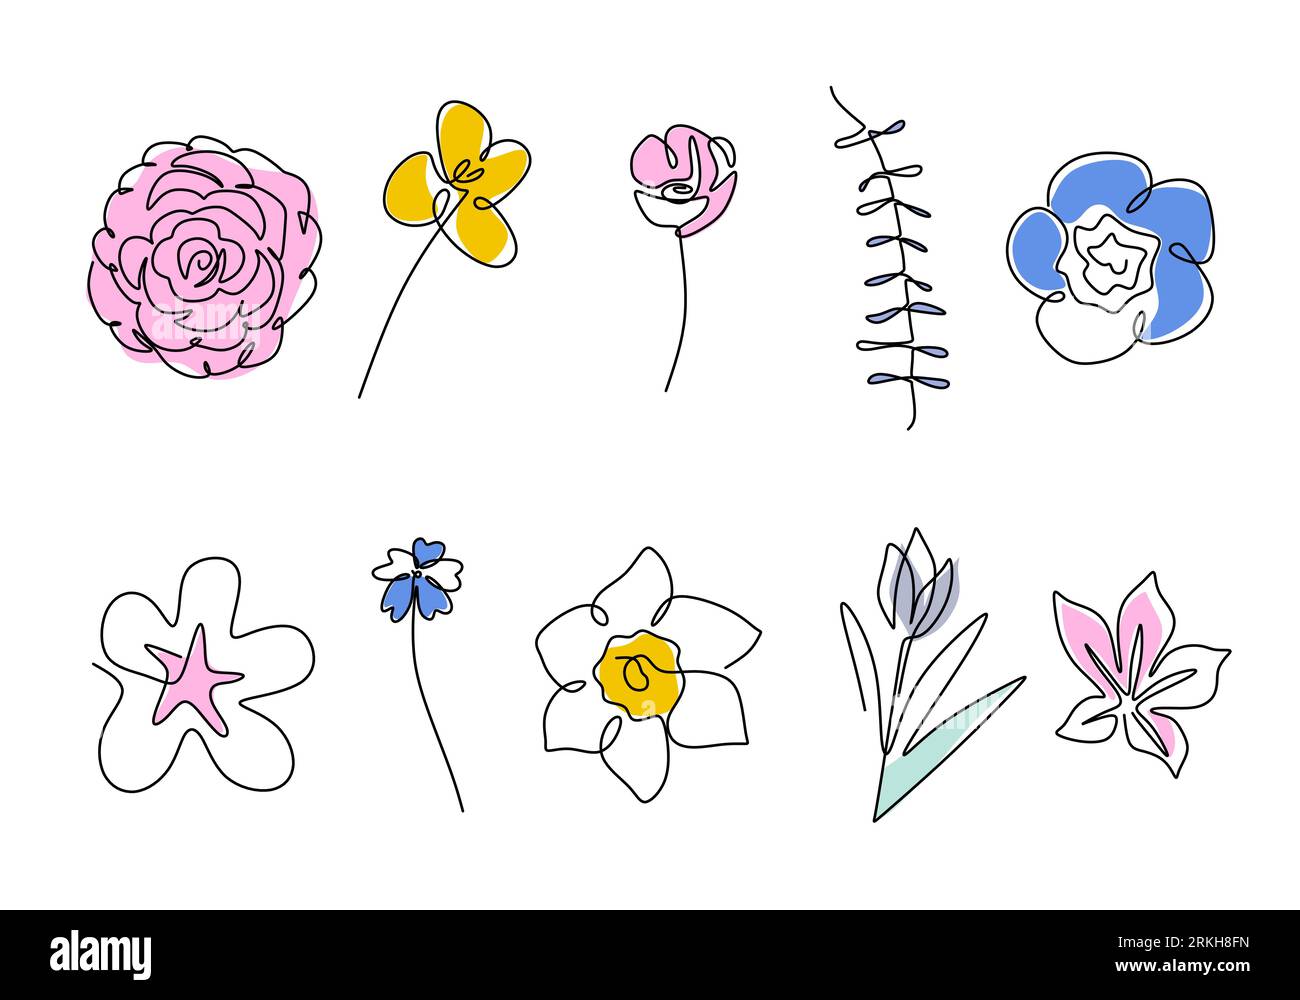 Satz von durchgehender einzeiliger Zeichnung einer schönen Blumen in verschiedenen Arten wie Kamelien, Tulpen, Mohn, Sakura, Azaleen, nahonana, Nemophilie, shi Stock Vektor